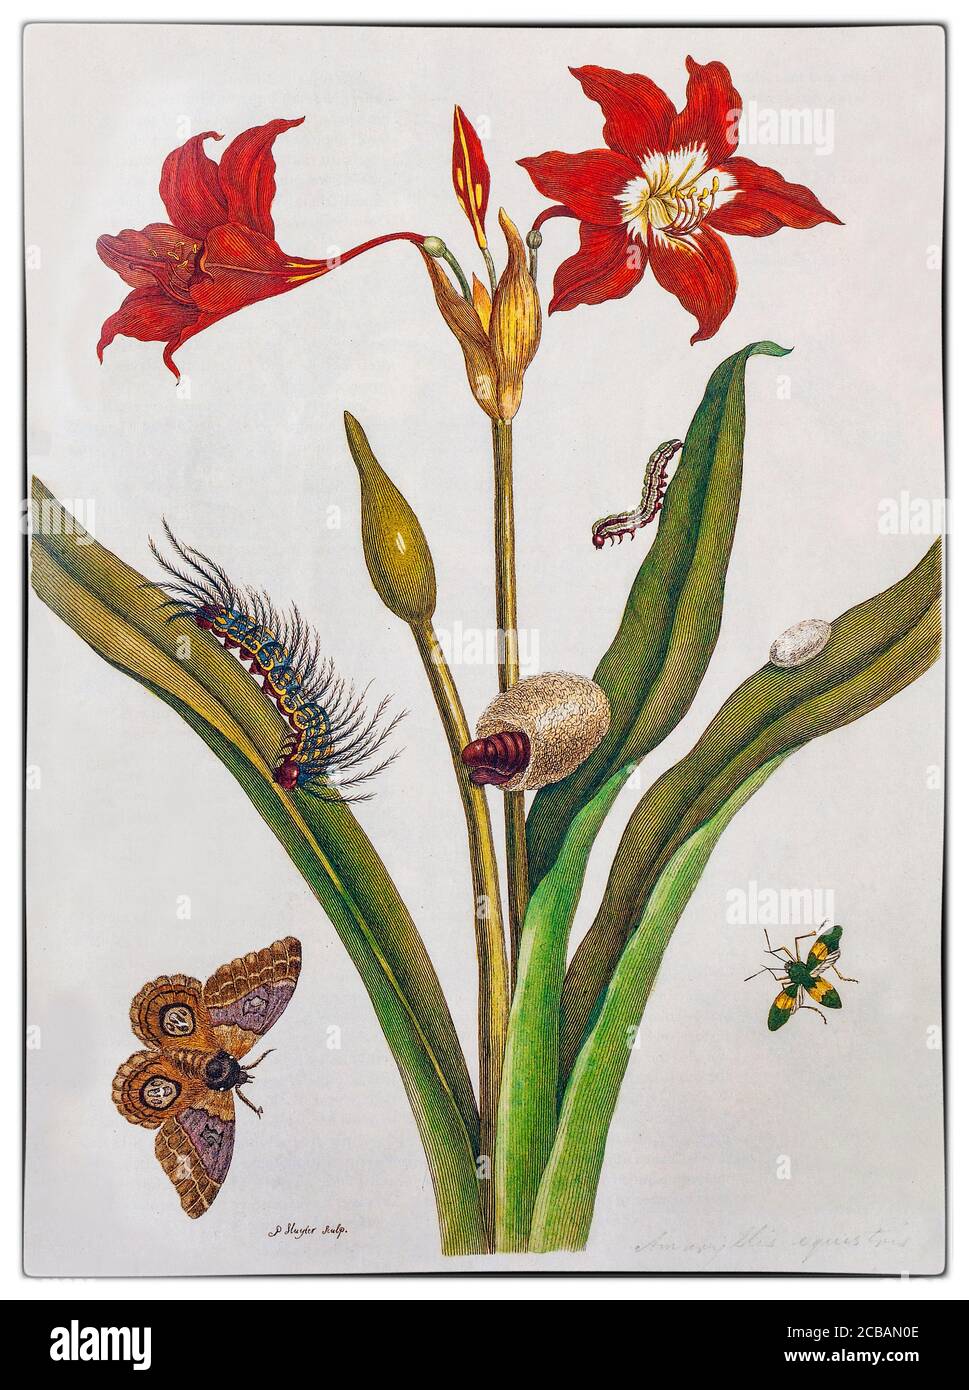 Maria Sibylla Merian (1647-1717) è stata una . Merian fu uno dei primi naturalisti europei ad osservare direttamente gli insetti. L'illustrazione mostra una pagina della prima grande opera dell'artista, 'der Raupen wunderbare Verwandelung und sonderbare Blumennahrung' (Trans: La meravigliosa trasformazione dei caterpills e lo strano cibo dei fiori) Foto Stock